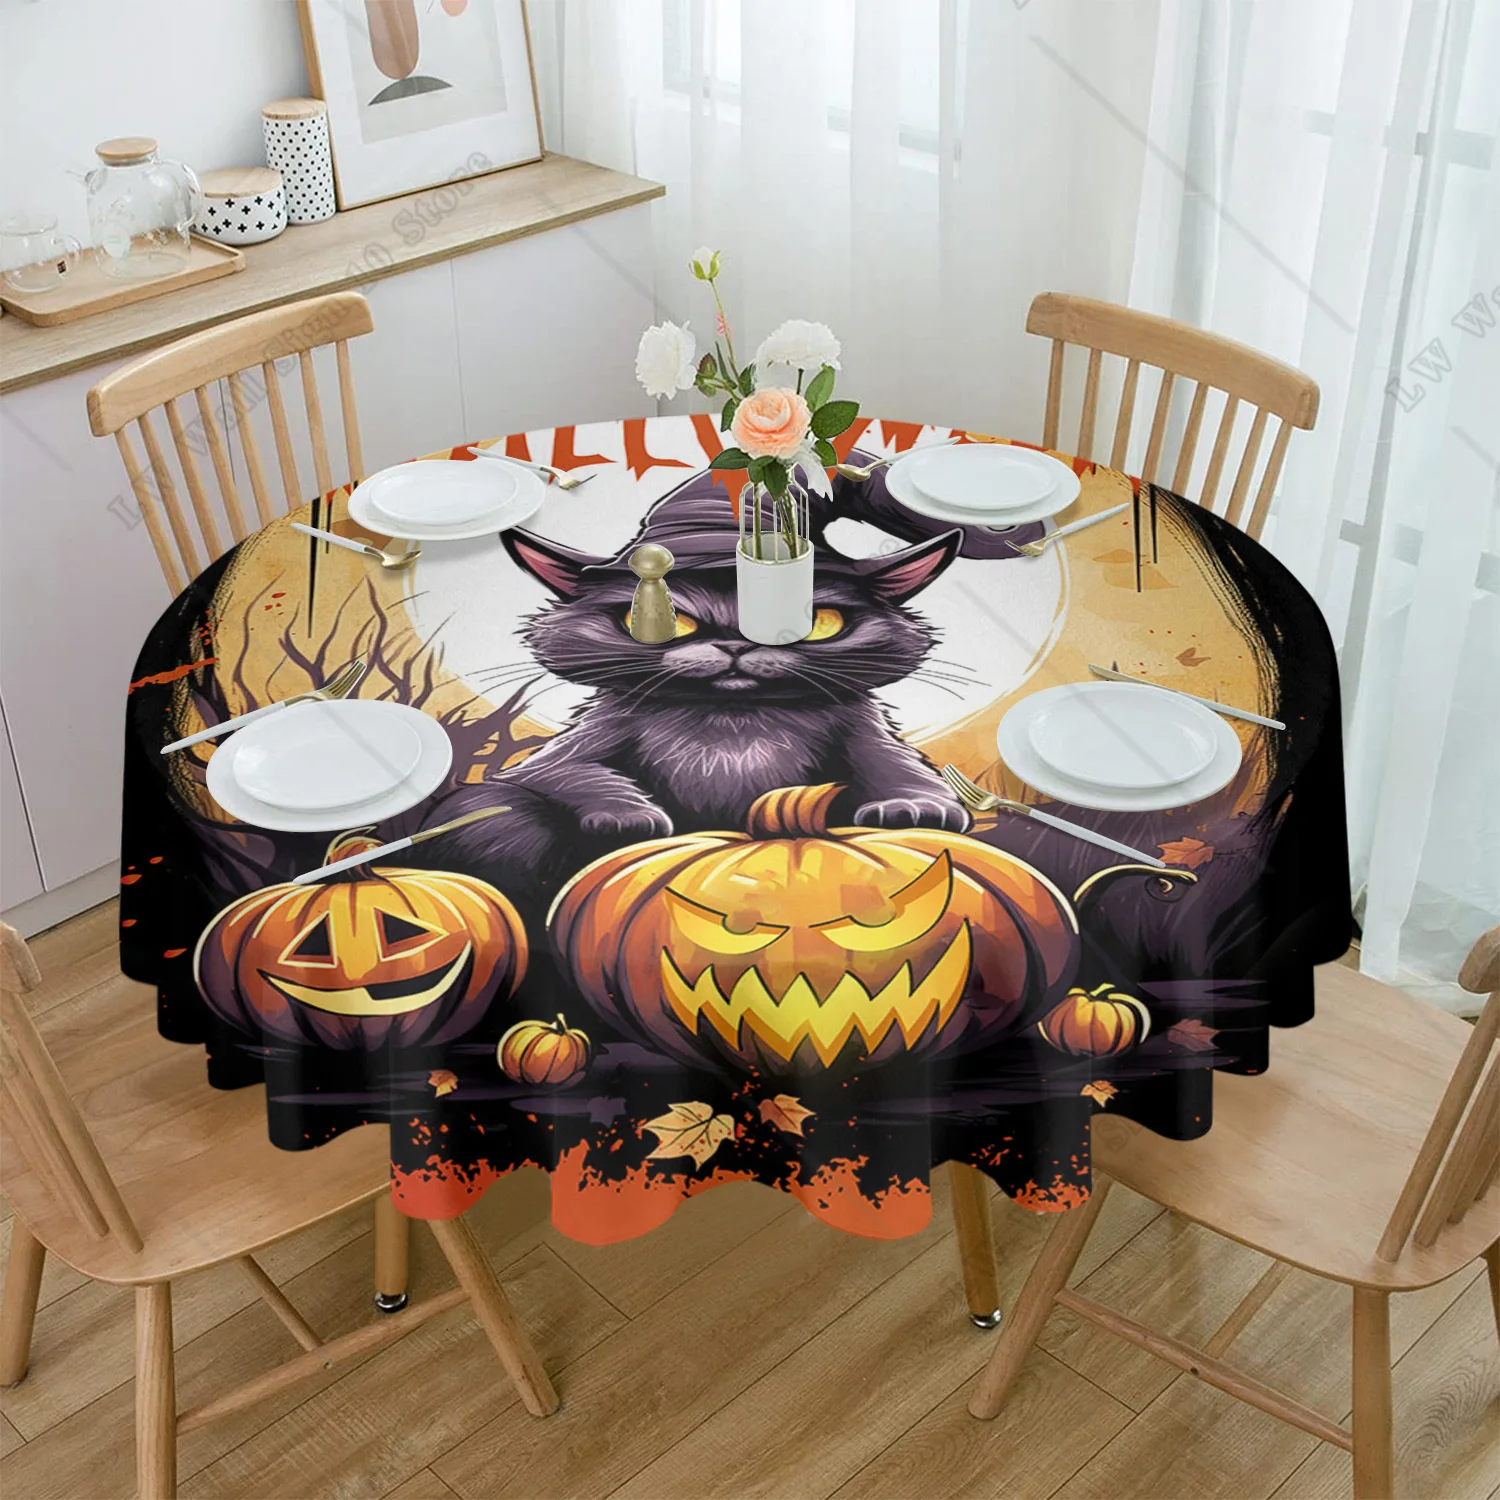 

Круглая скатерть на Хэллоуин, тыква, летучая мышь, кот, водонепроницаемая скатерть на стол для свадебной вечеринки, праздничная скатерть для обеденного стола, подходит для домашней кухни